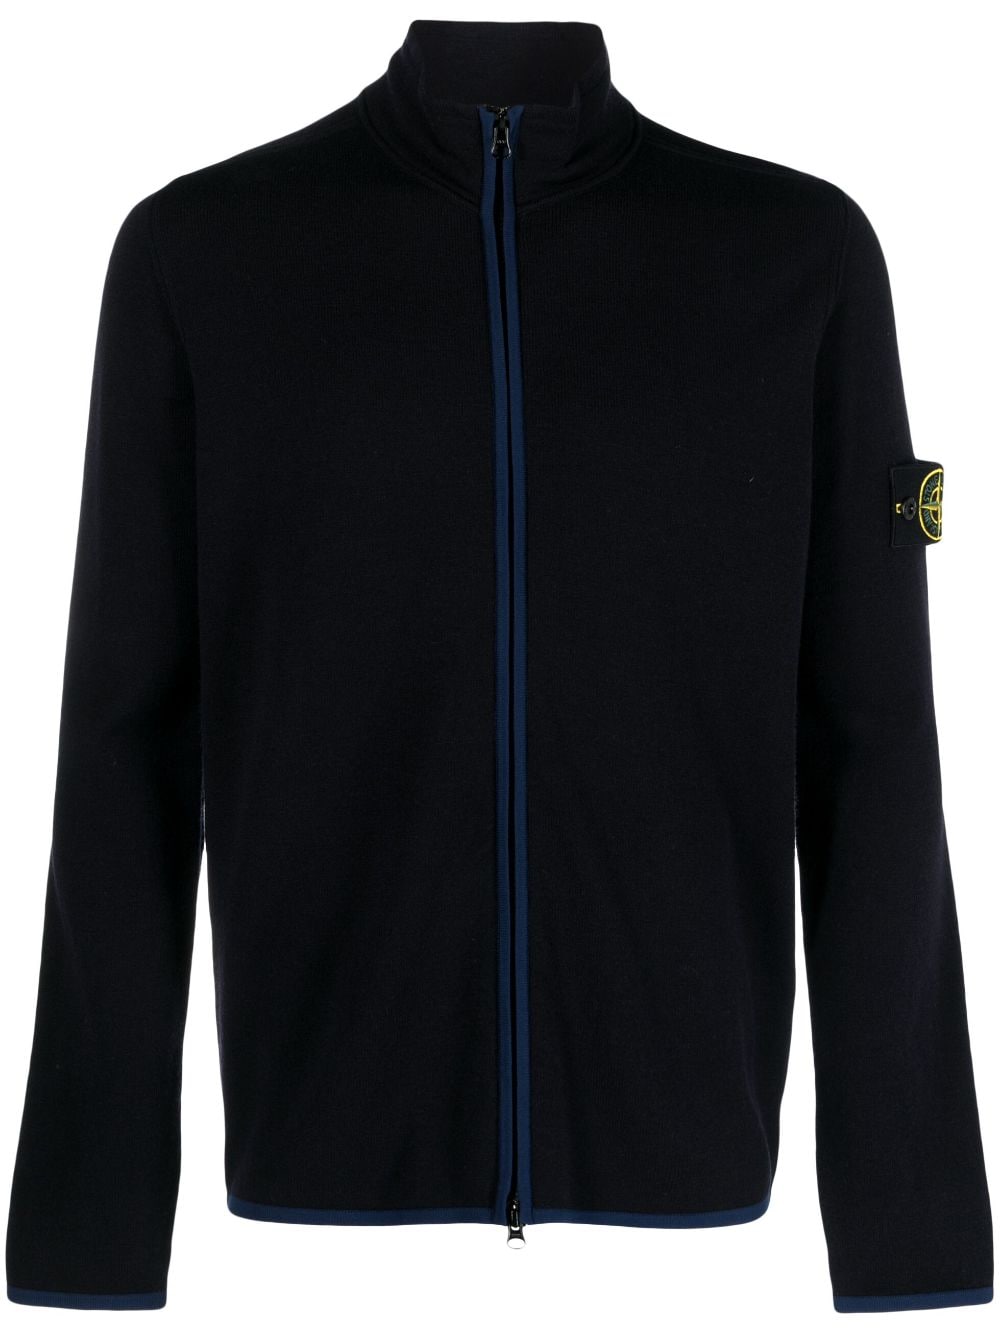 Compass-patch zip-up sweatshirt